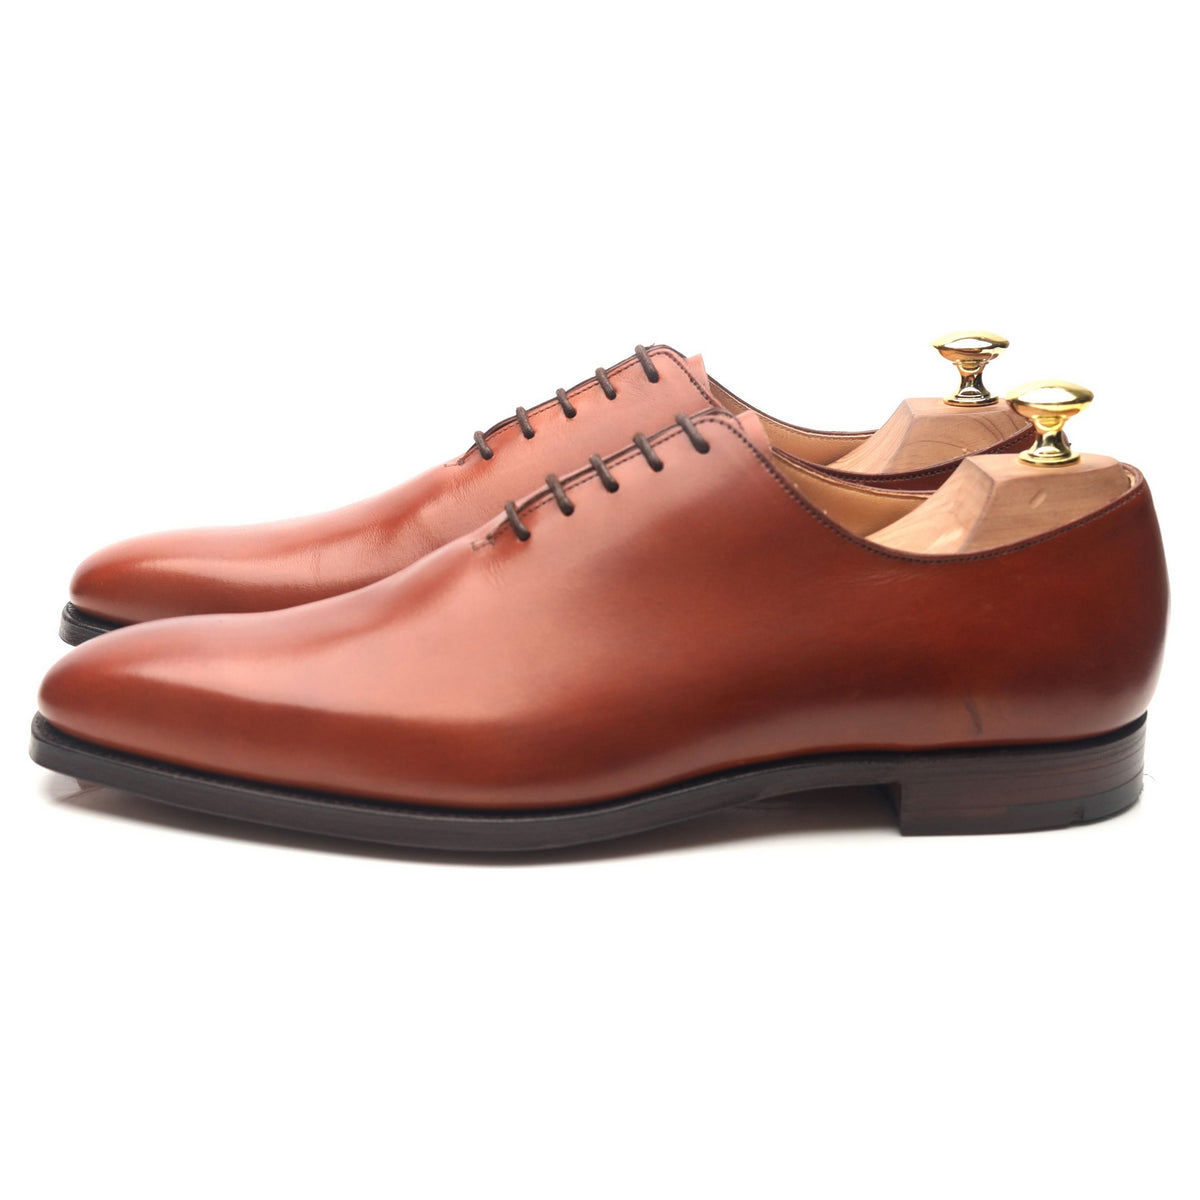 Alex' Tan Brown Leather Wholecut Oxford UK 8.5 E - Abbot's Shoes